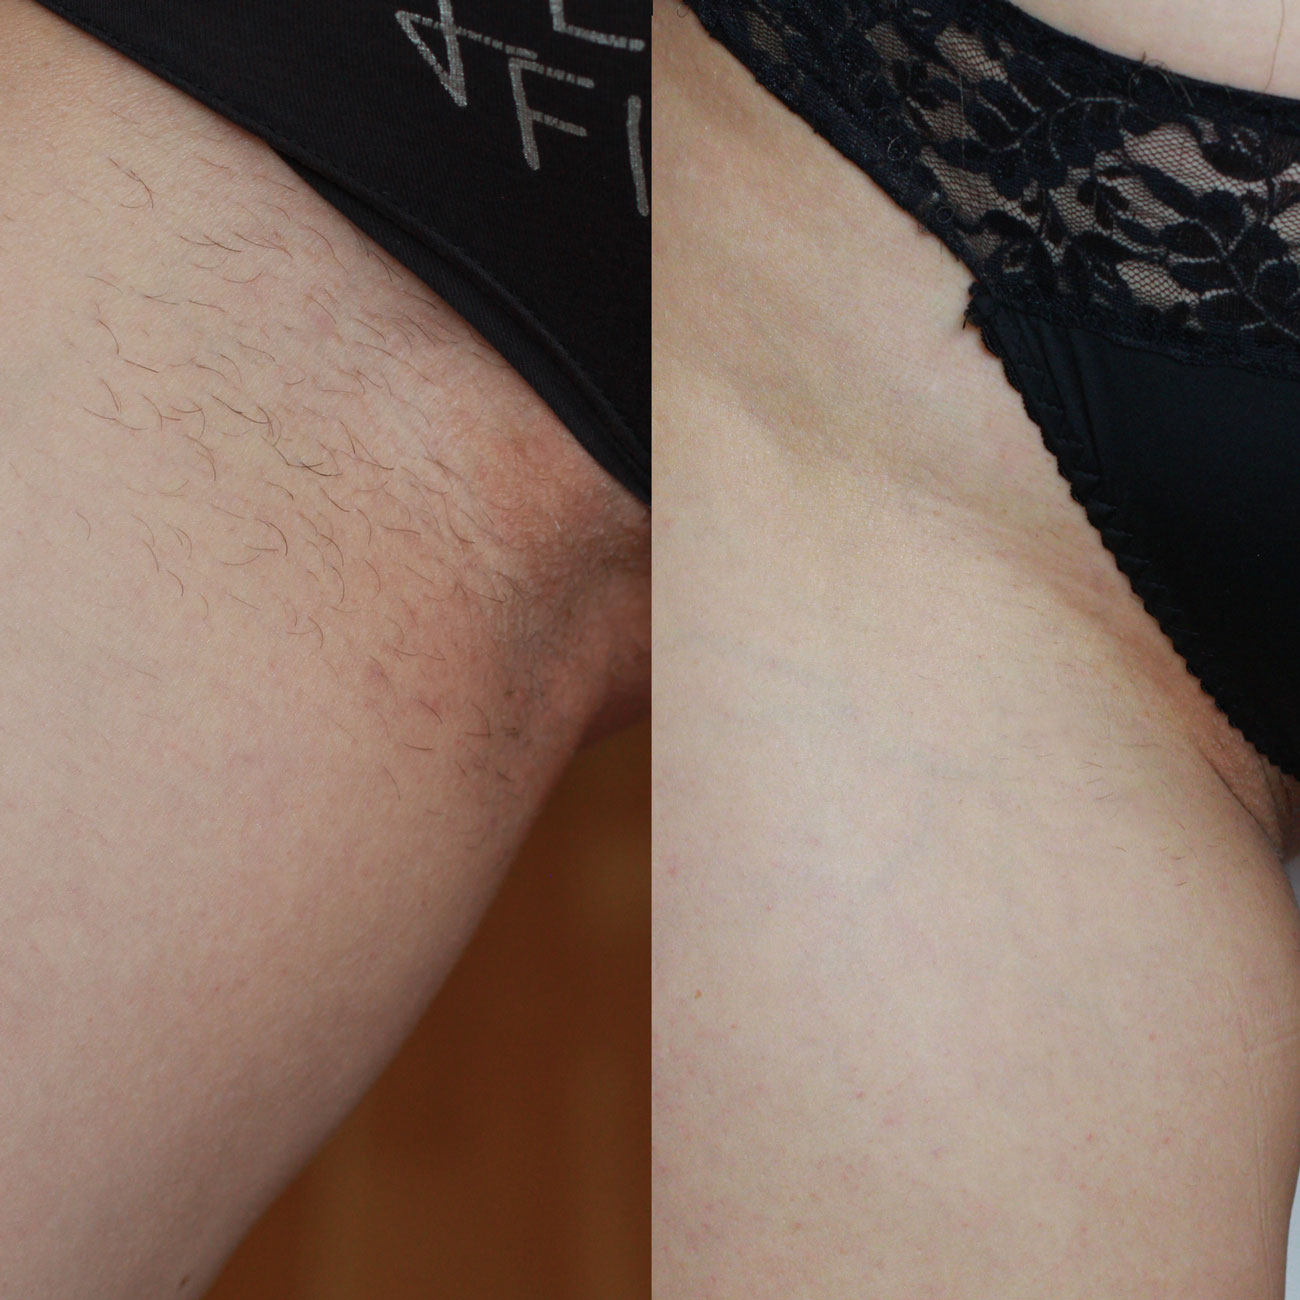 Hårborttagning med laser före och efter bikinilinje